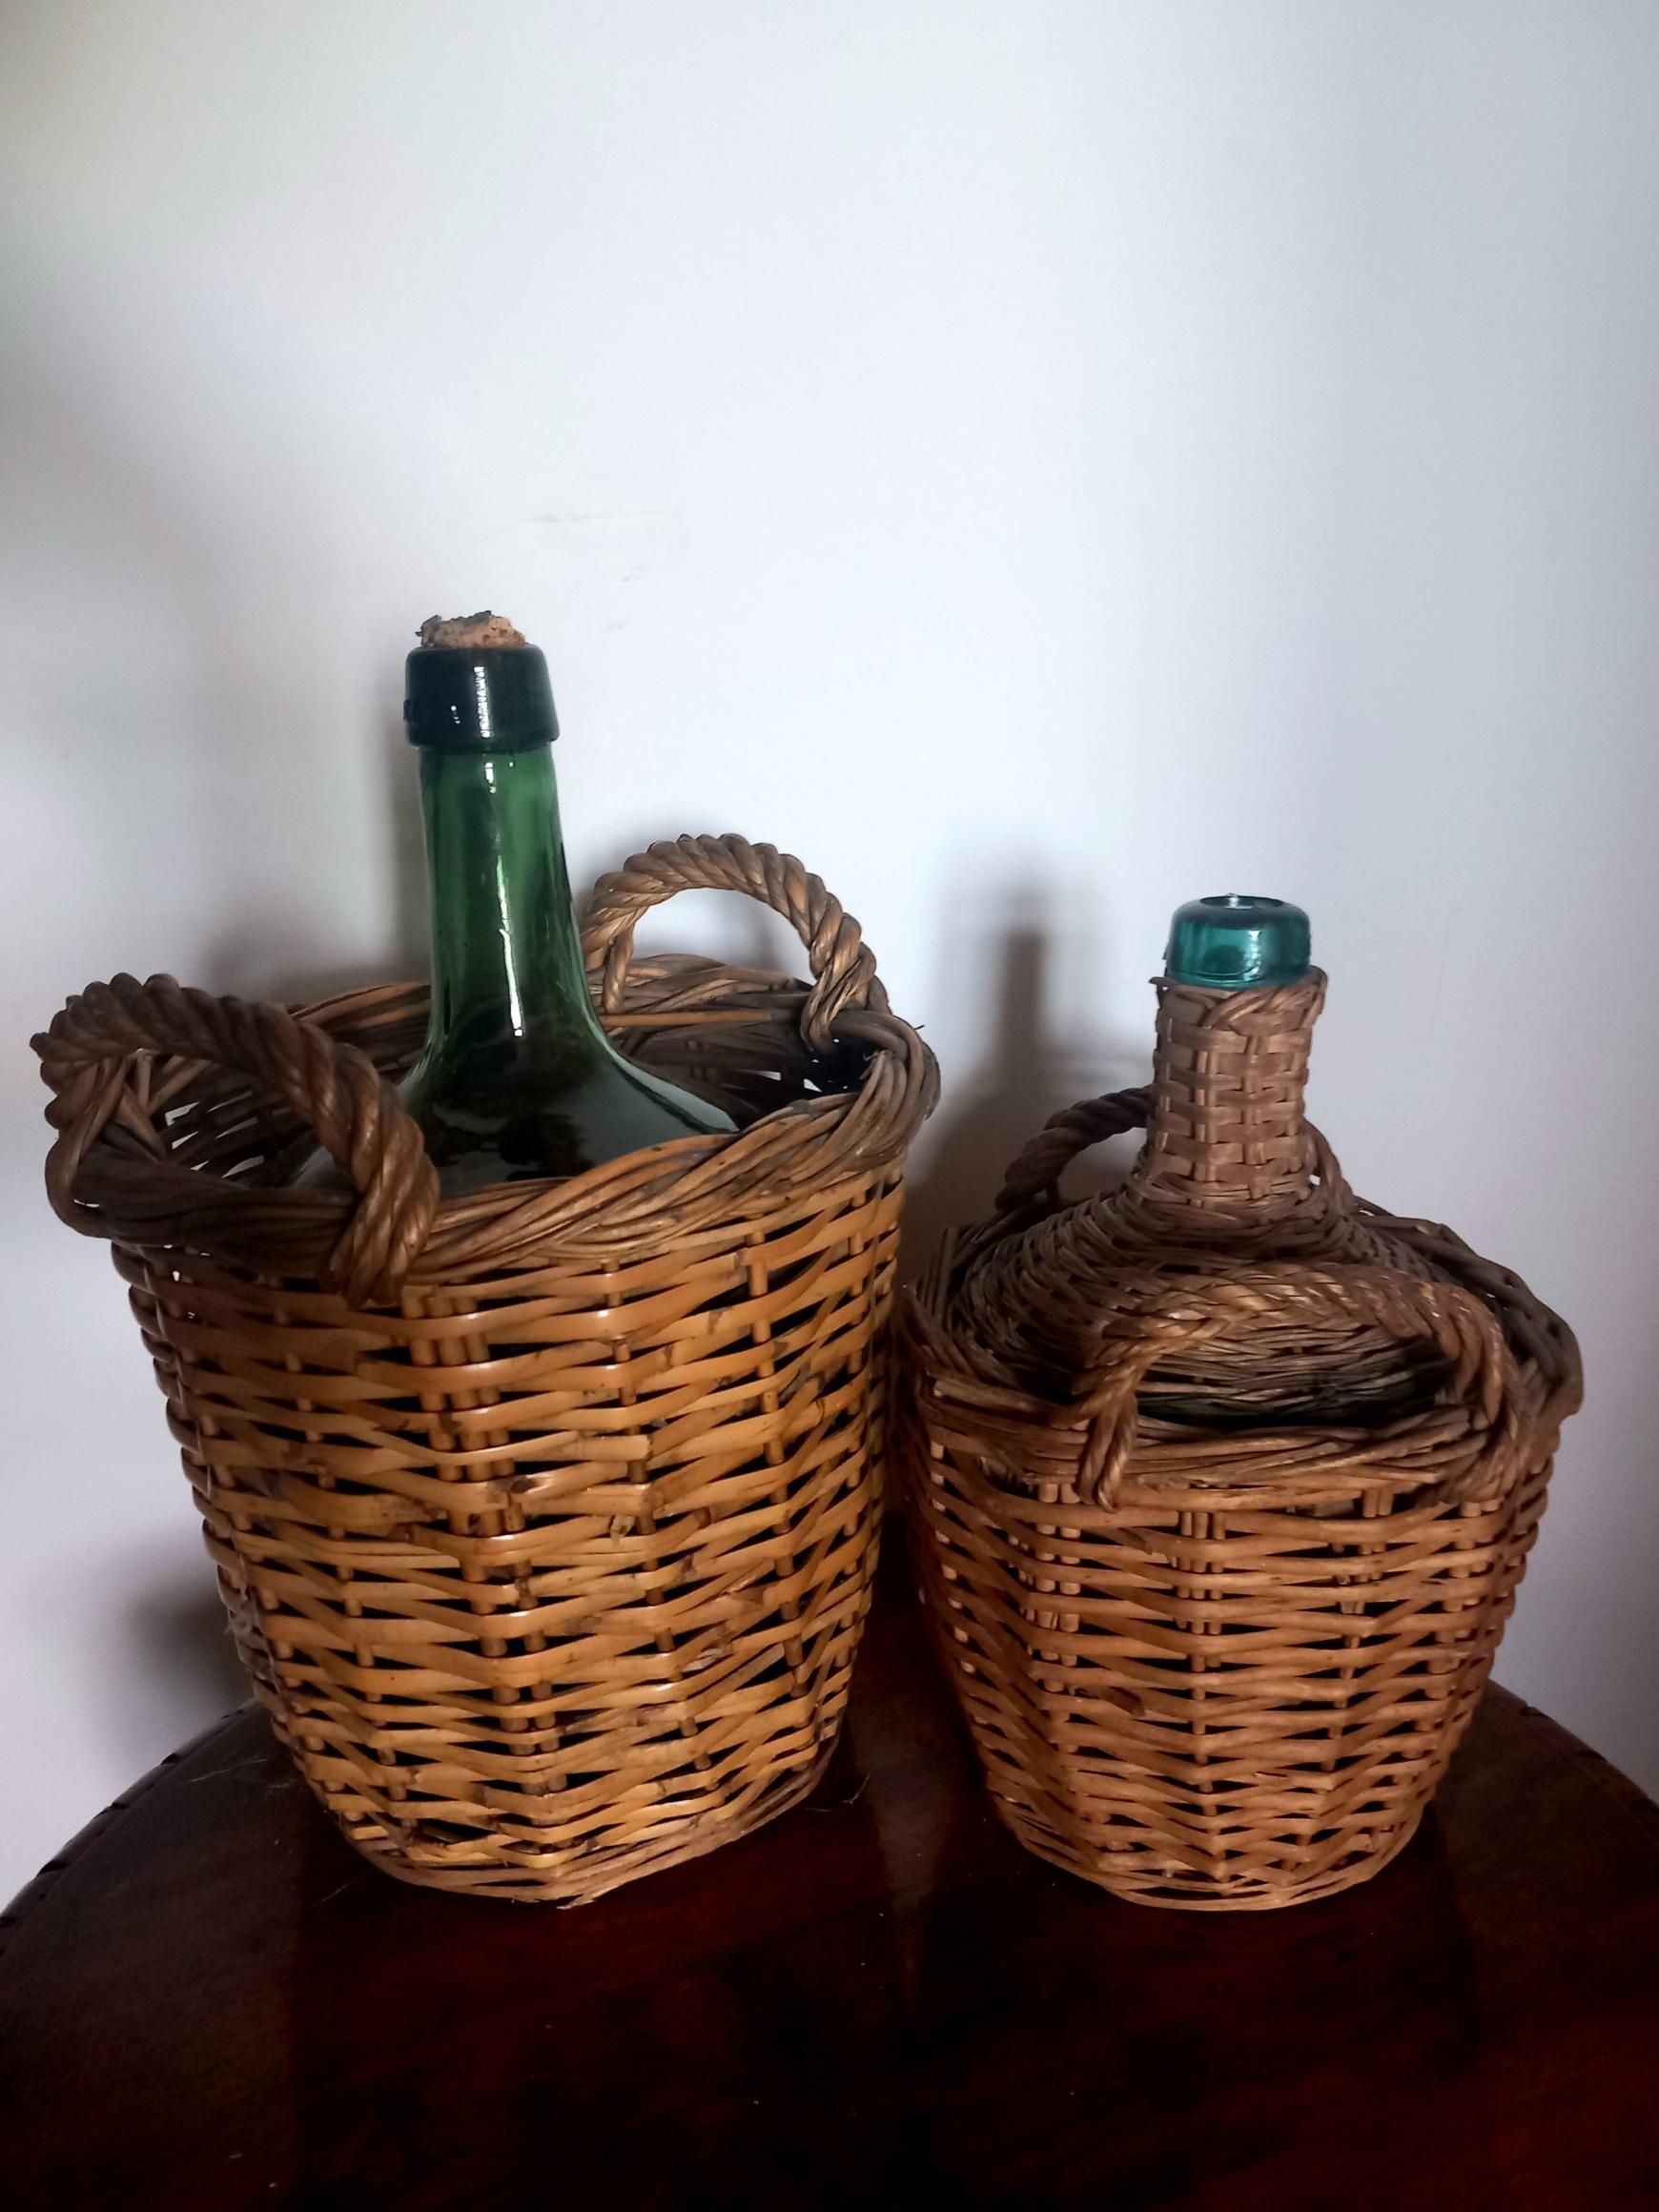 Weinflaschenkühler. Glas, Korbweide  Spanien Anfang des 20. Jahrhunderts, 1930 oder früher.

24X24X38 cm
18X18X27 cm

Schöne traditionelle Flaschen oder Karaffen zur Aufbewahrung und vor allem zum Transport des Weins vom Fass der Weinkellerei nach